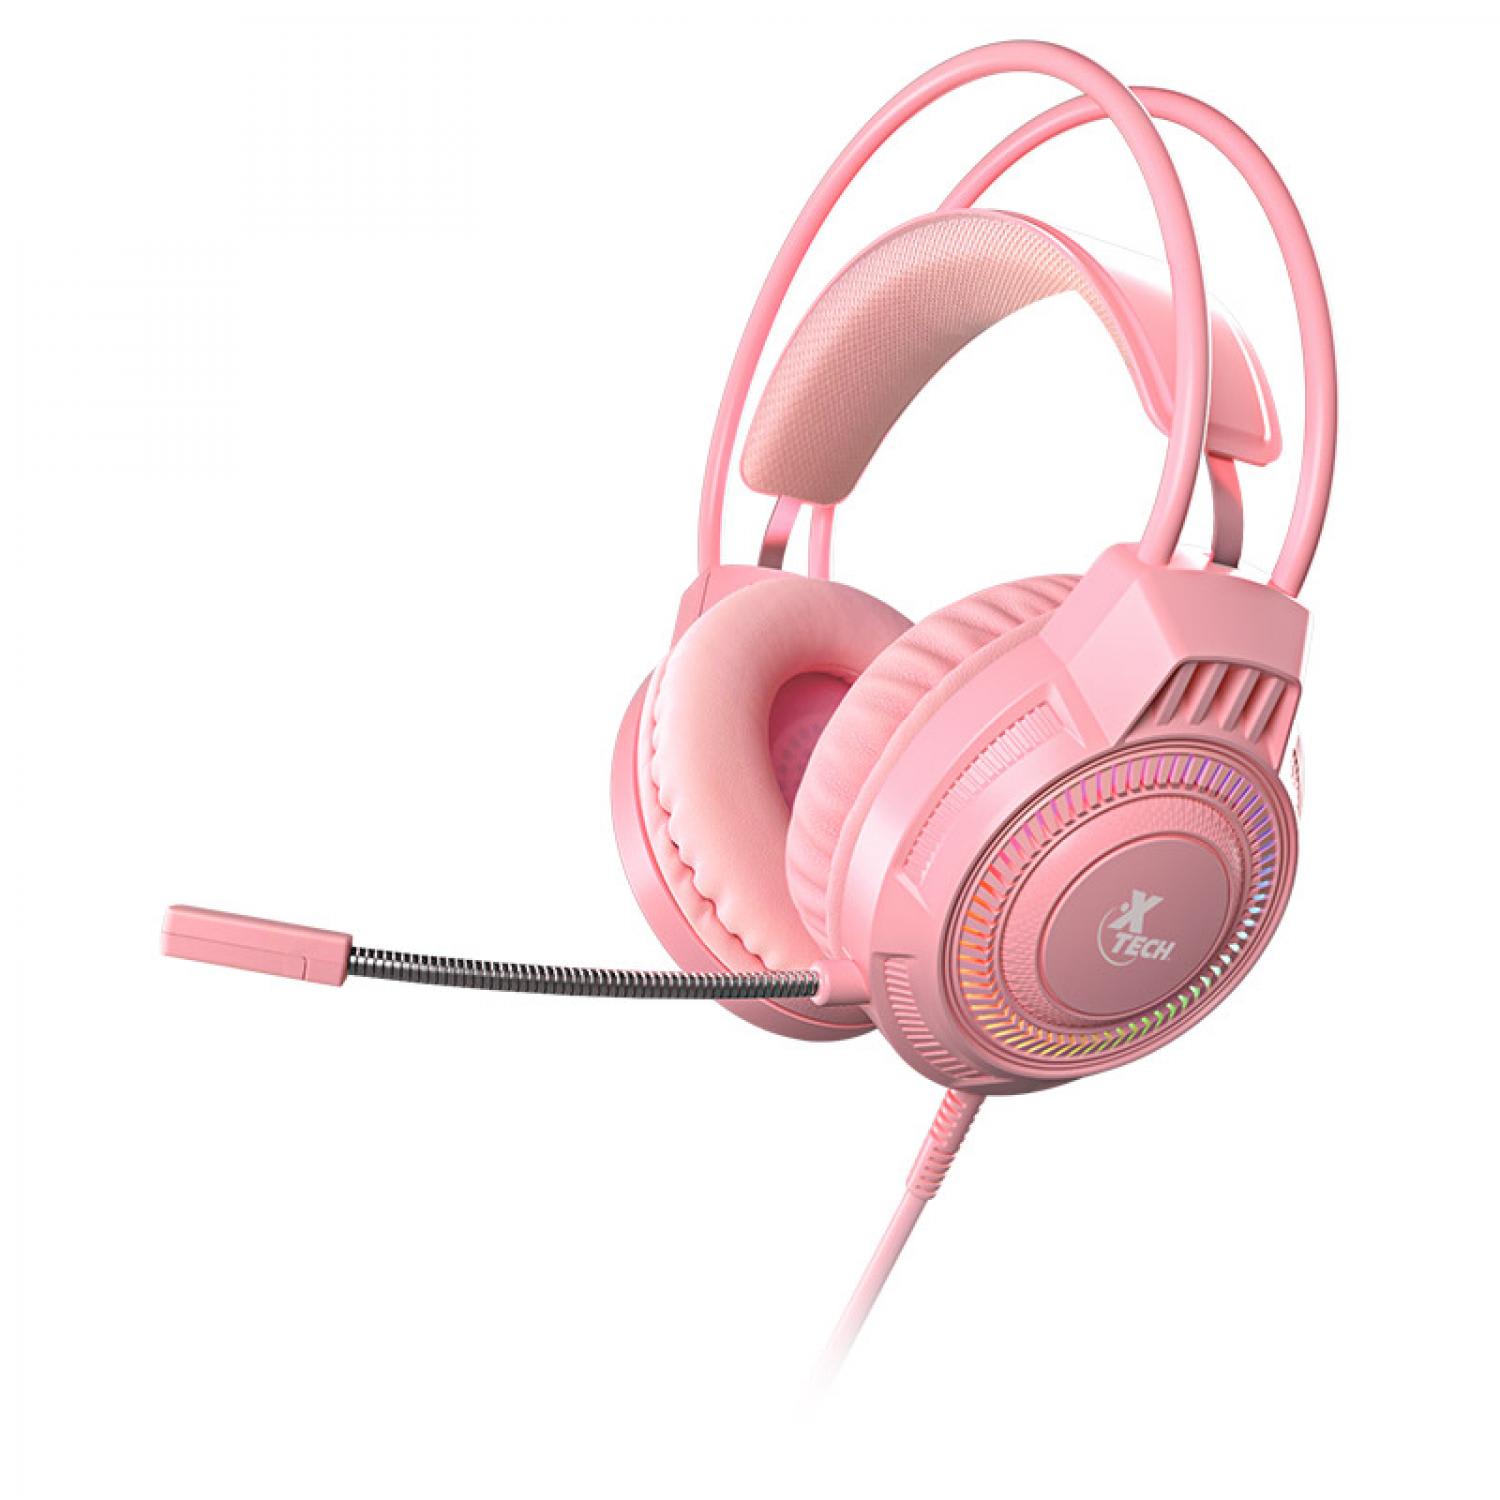 Audífonos con micrófono gamer Xtech Khione XTH-564, Multiplataforma 3.5mm (incluye divisor Y), rosa